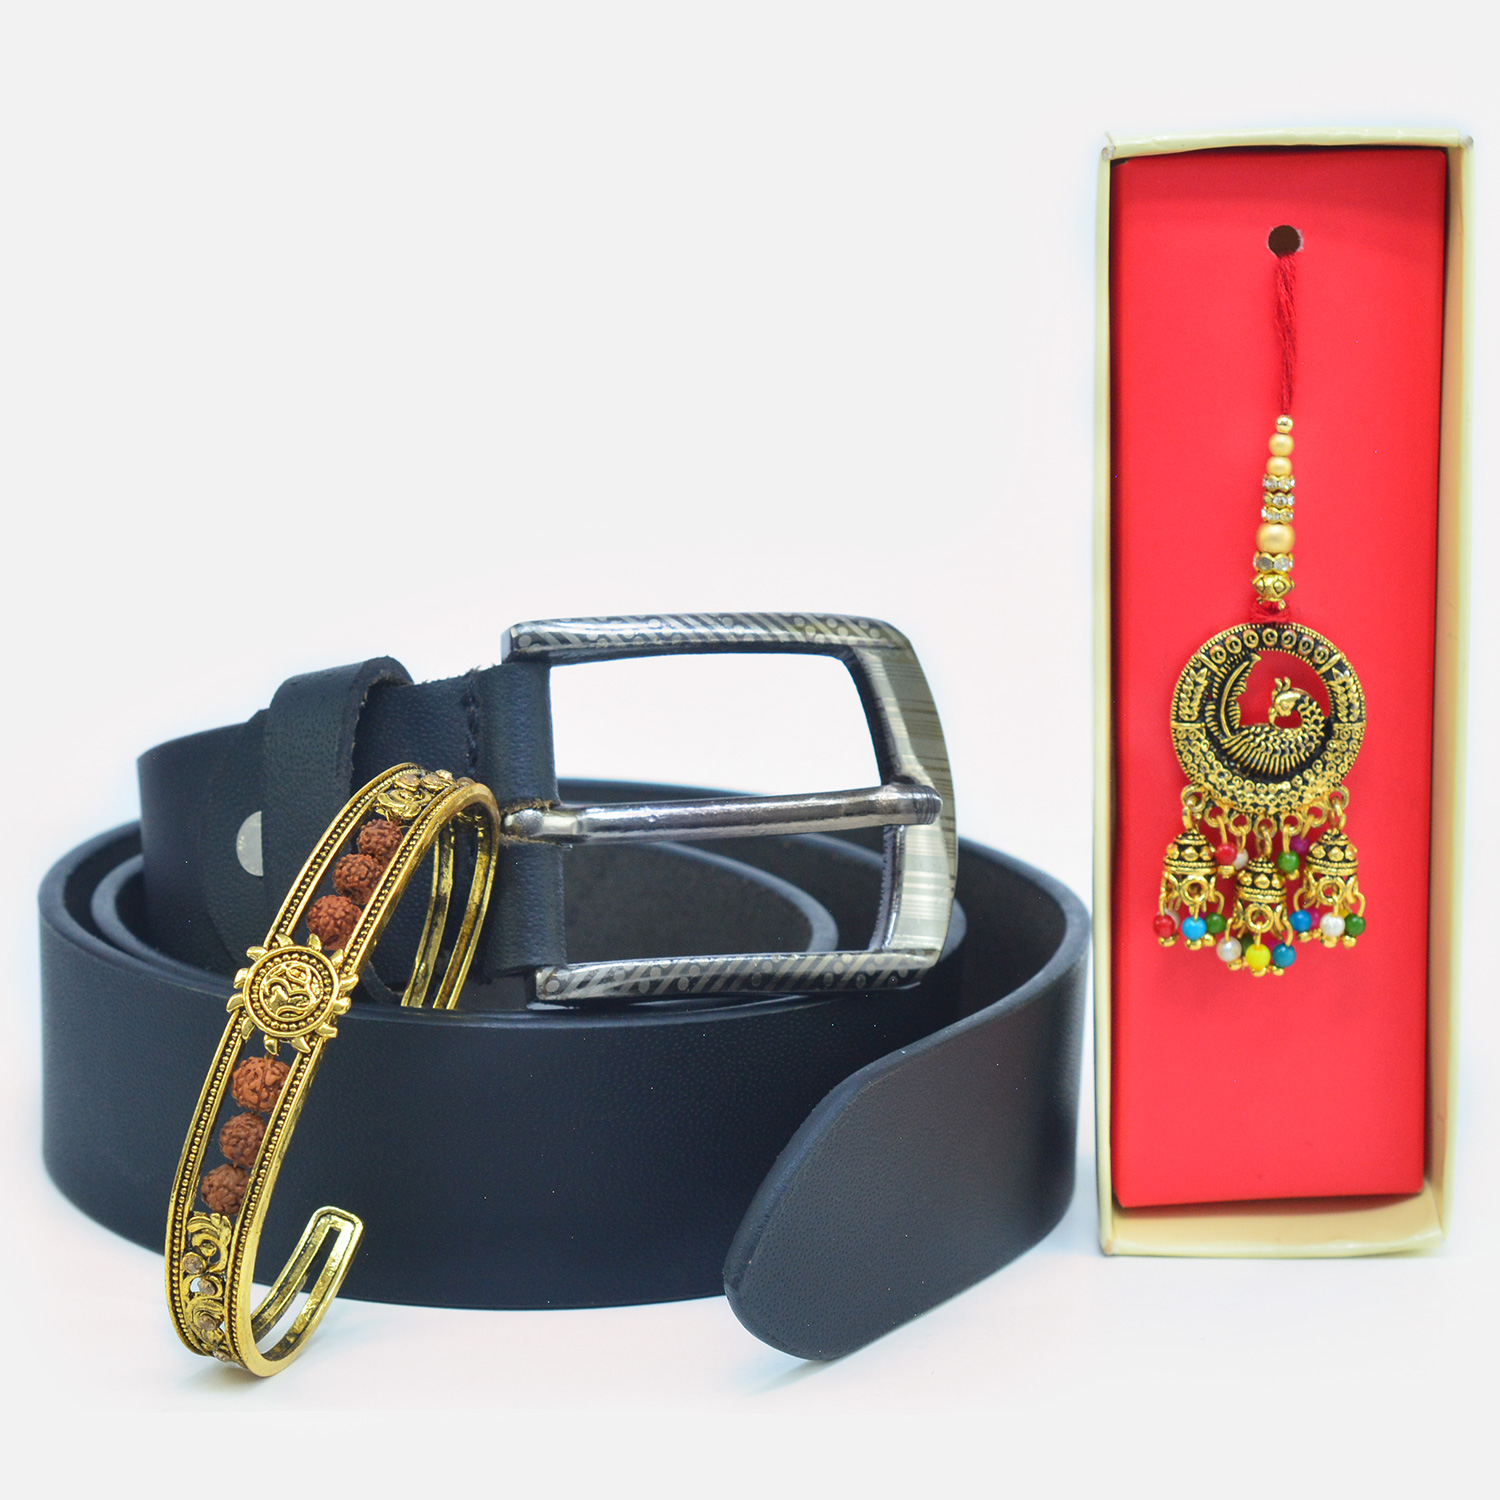 Gorgeous Rudraksha Bracelet and Lumba with Eye Catching Leather Belt